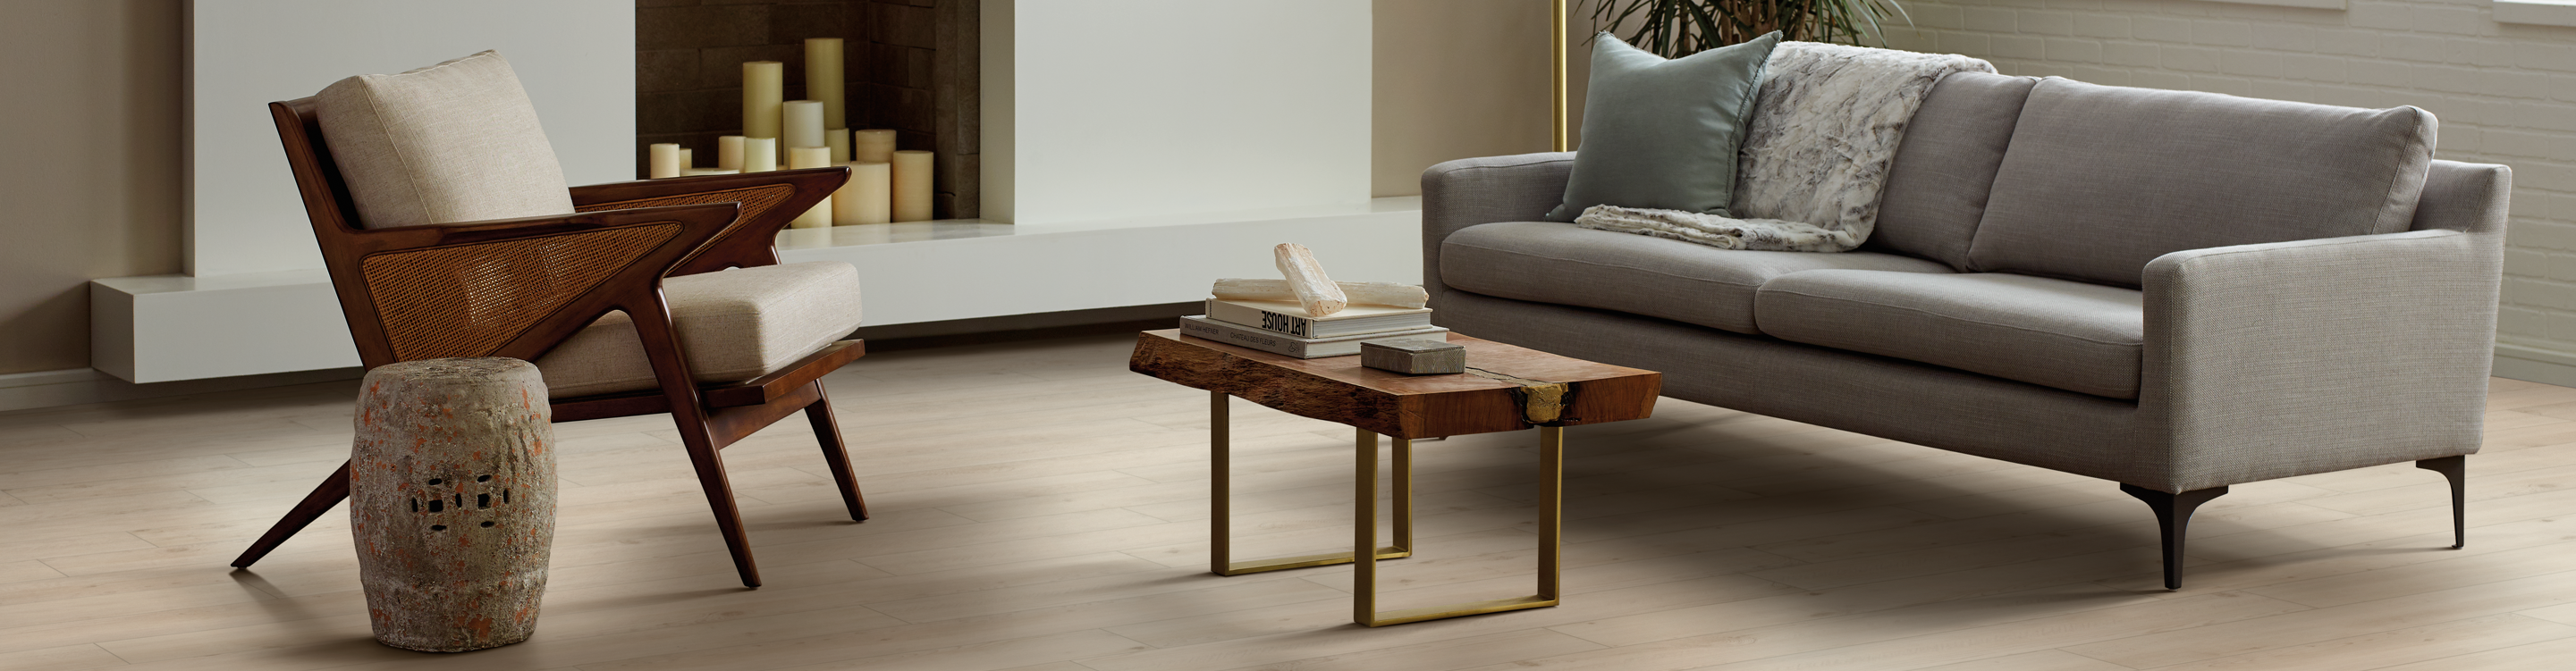 wood look vinyl flooring in living room